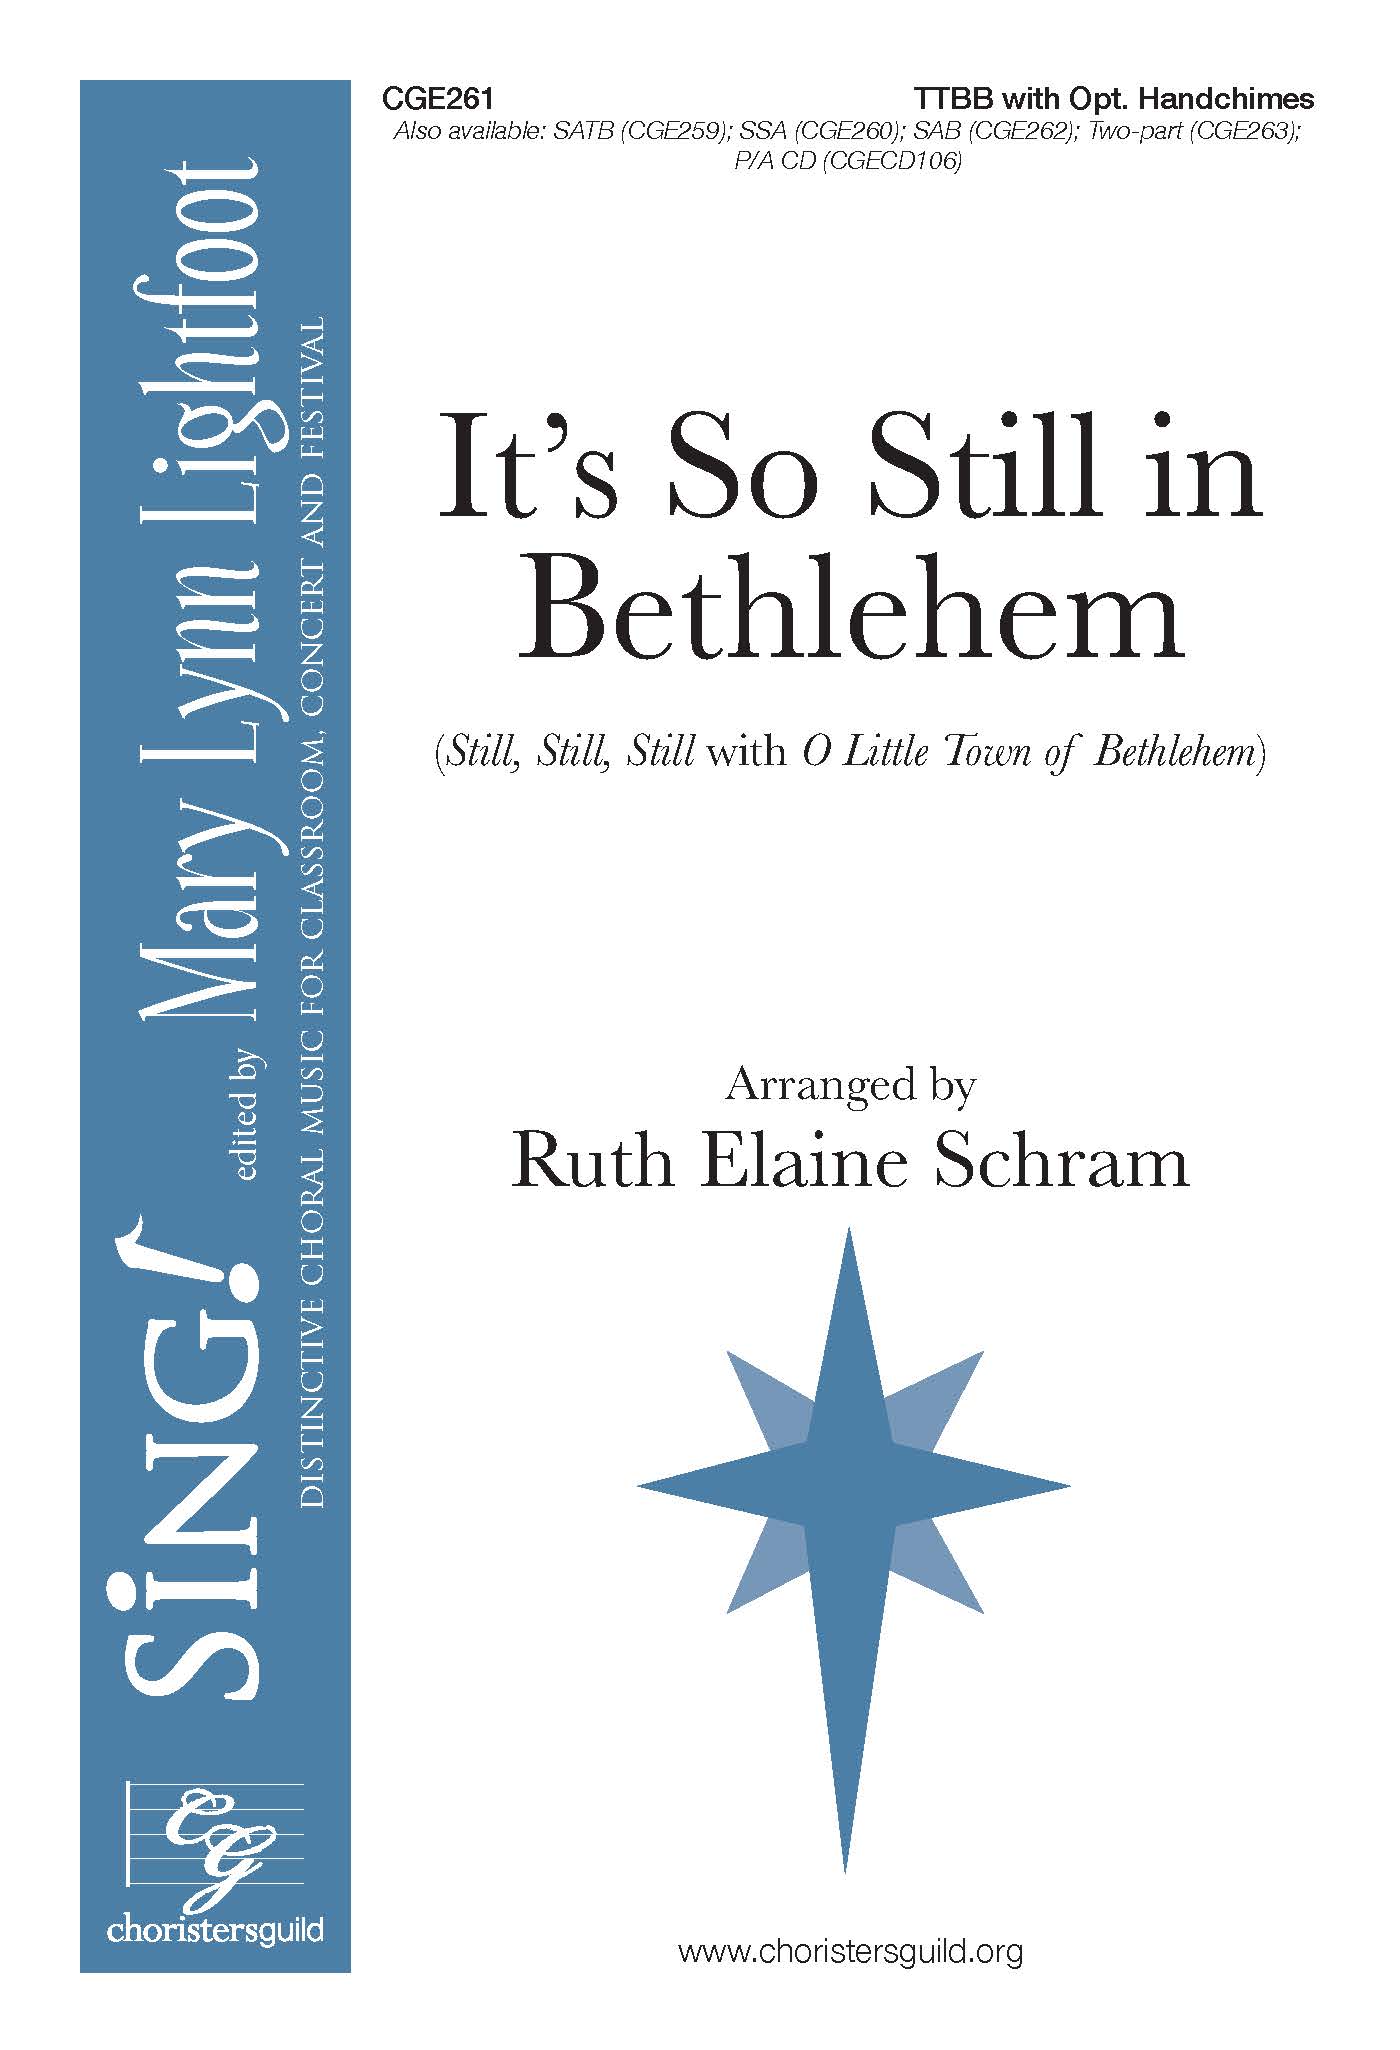 It's So Still in Bethlehem - TTBB